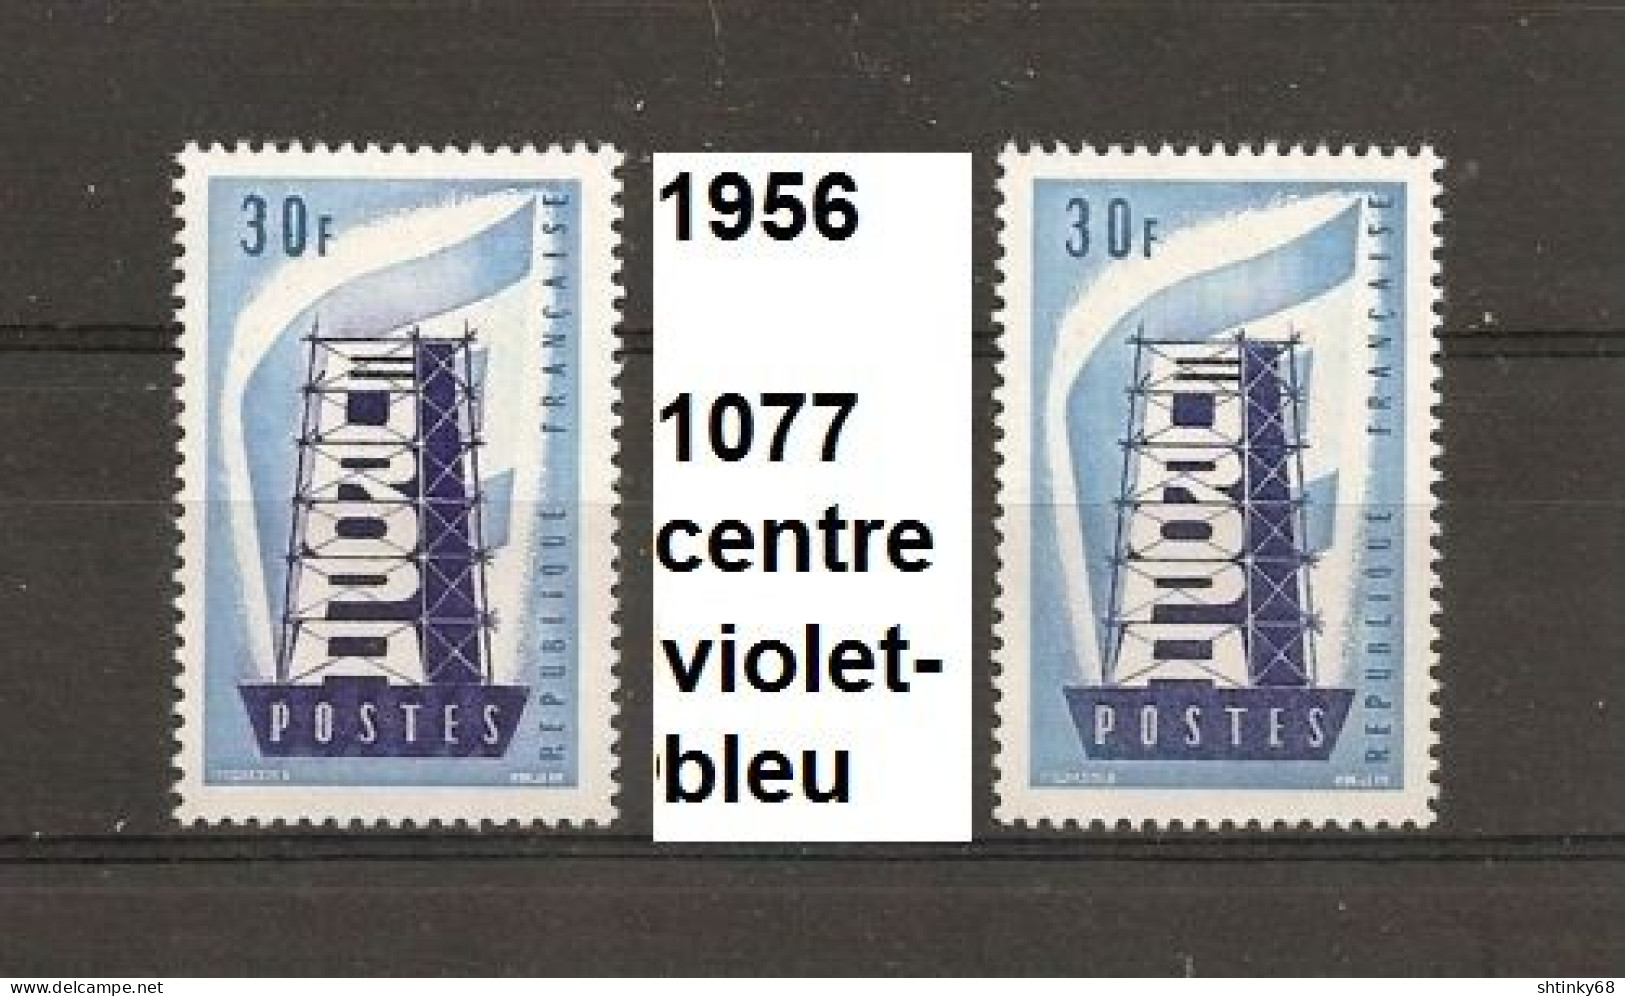 Variété De 1956 Neuf** Y&T N° 1077 Couleur Du Centre Rose-bleu Au Lieu De Bleu-foncé - Unused Stamps